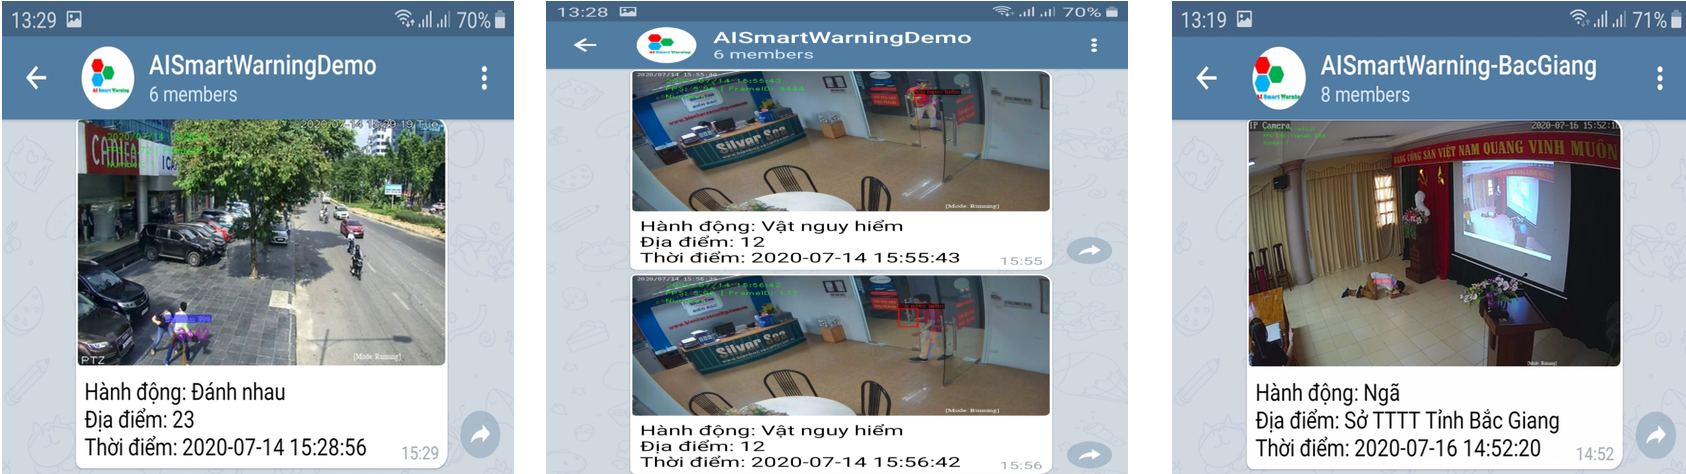 AI Smart Warning - giải pháp giám sát an ninh tự động do Việt Nam làm chủ - Ảnh 2.